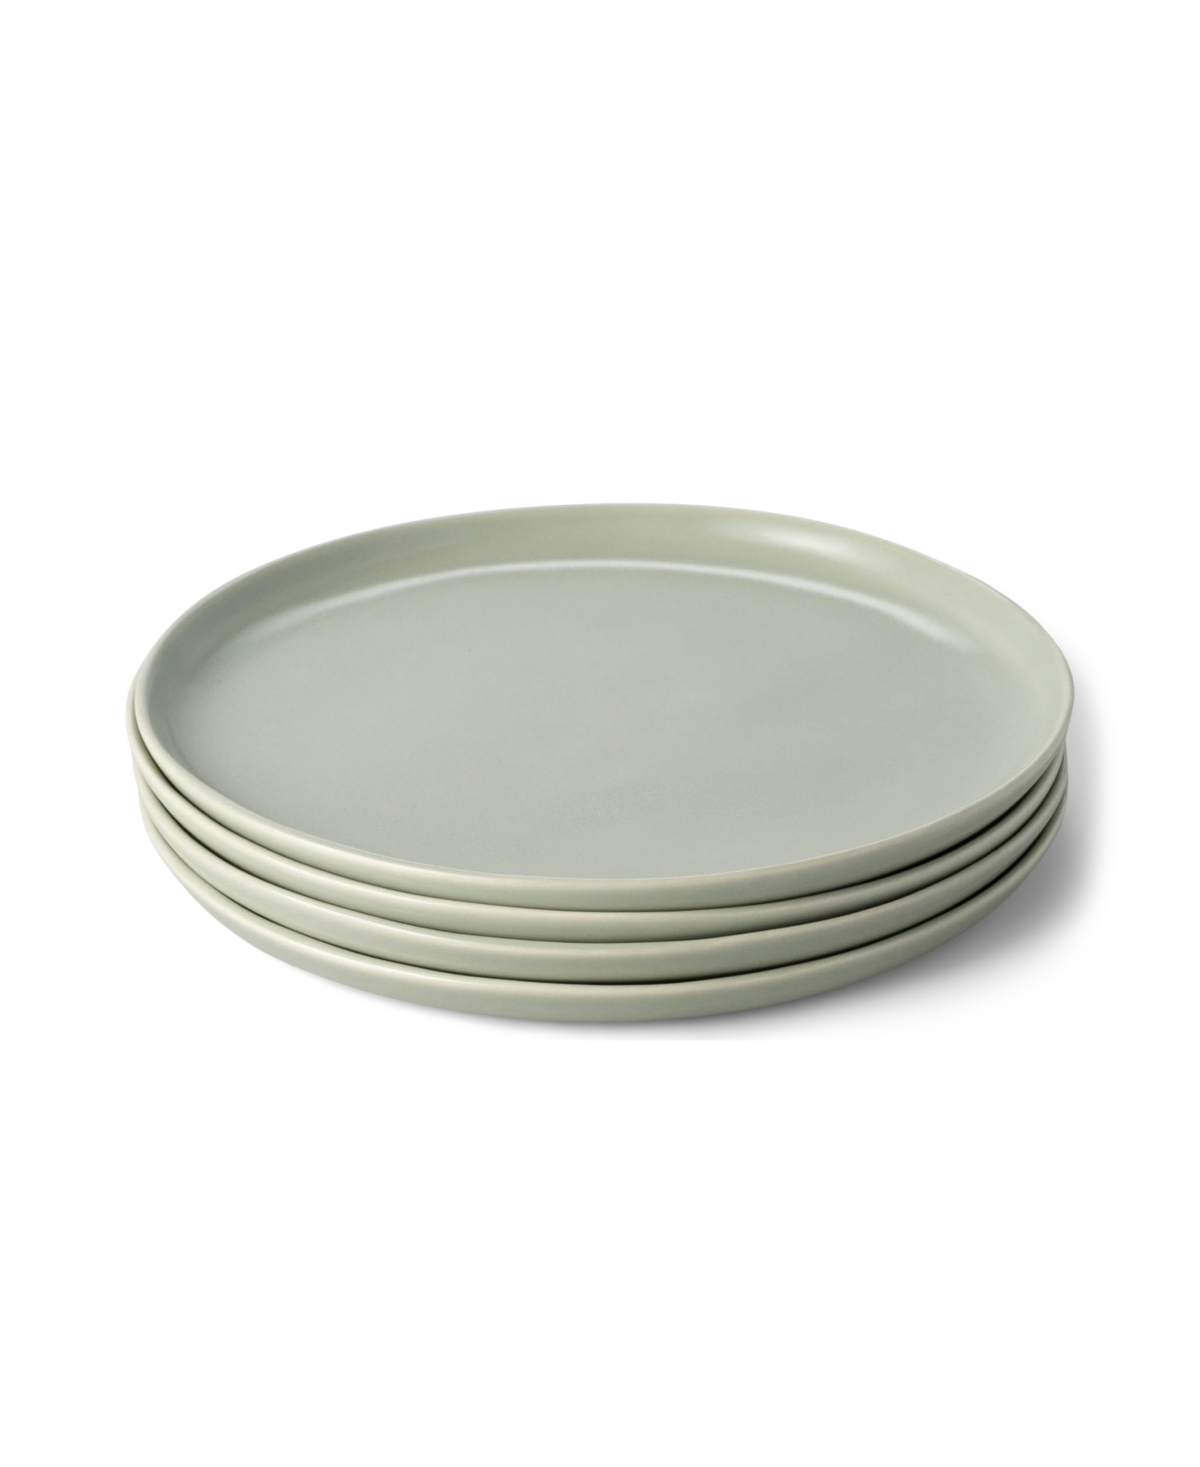 Dinner Plates, Set of 4 - Desert Taupe